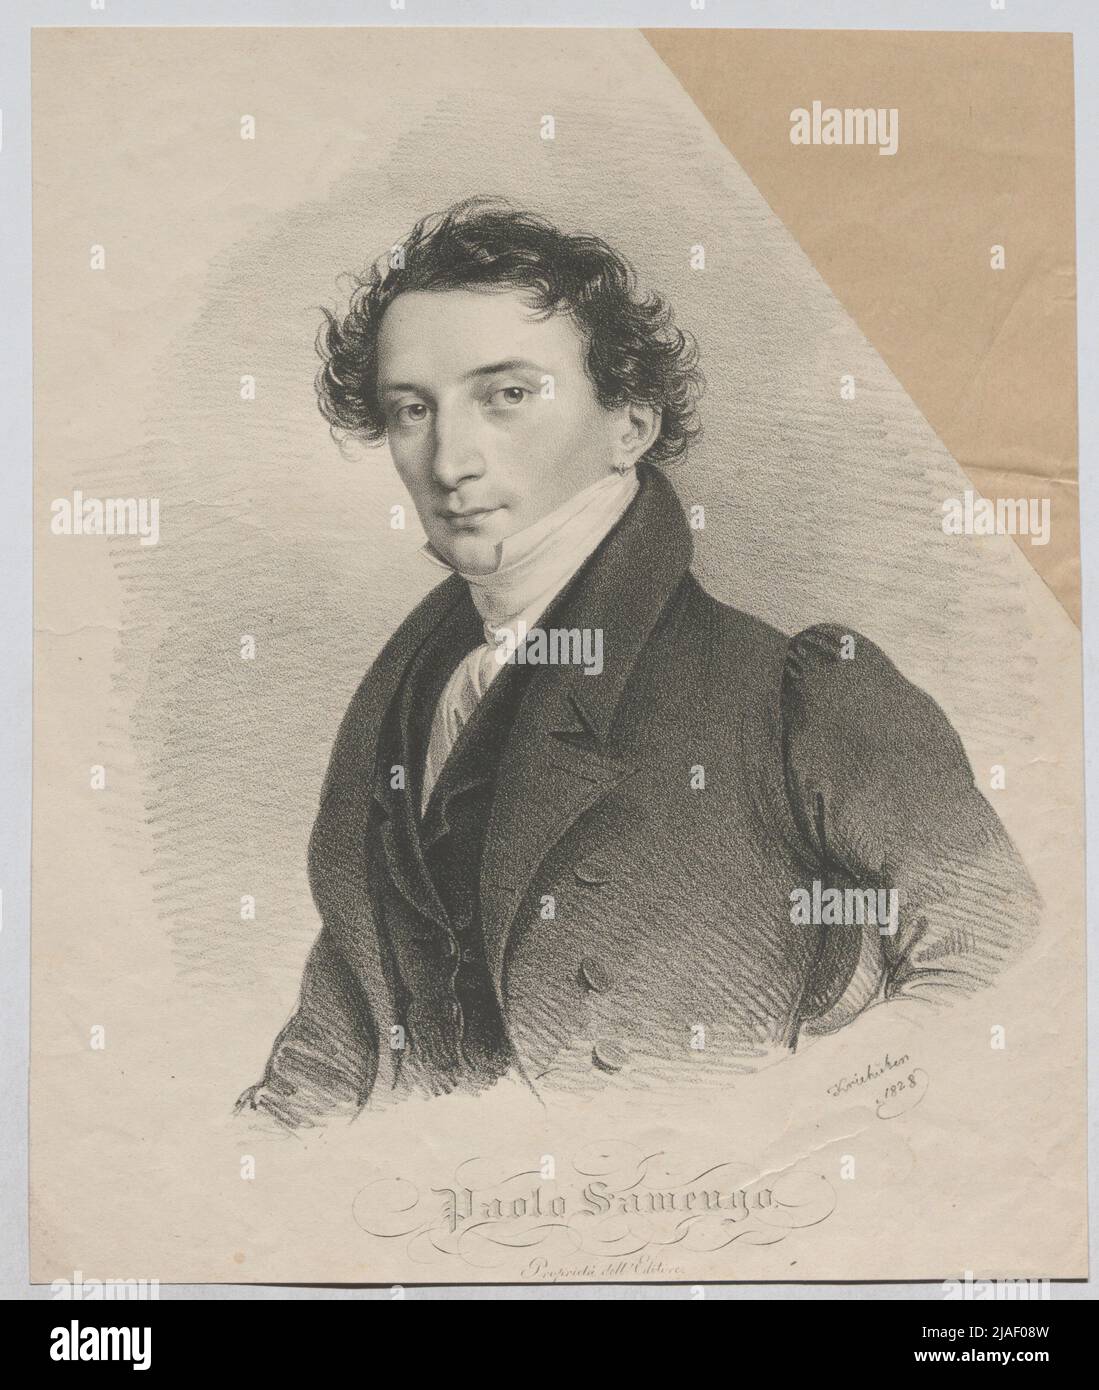 Paolo Samengo. '. Paolo Samengo, Italian dancer. Josef Kriehuber (1800-1876), lithographic Stock Photo